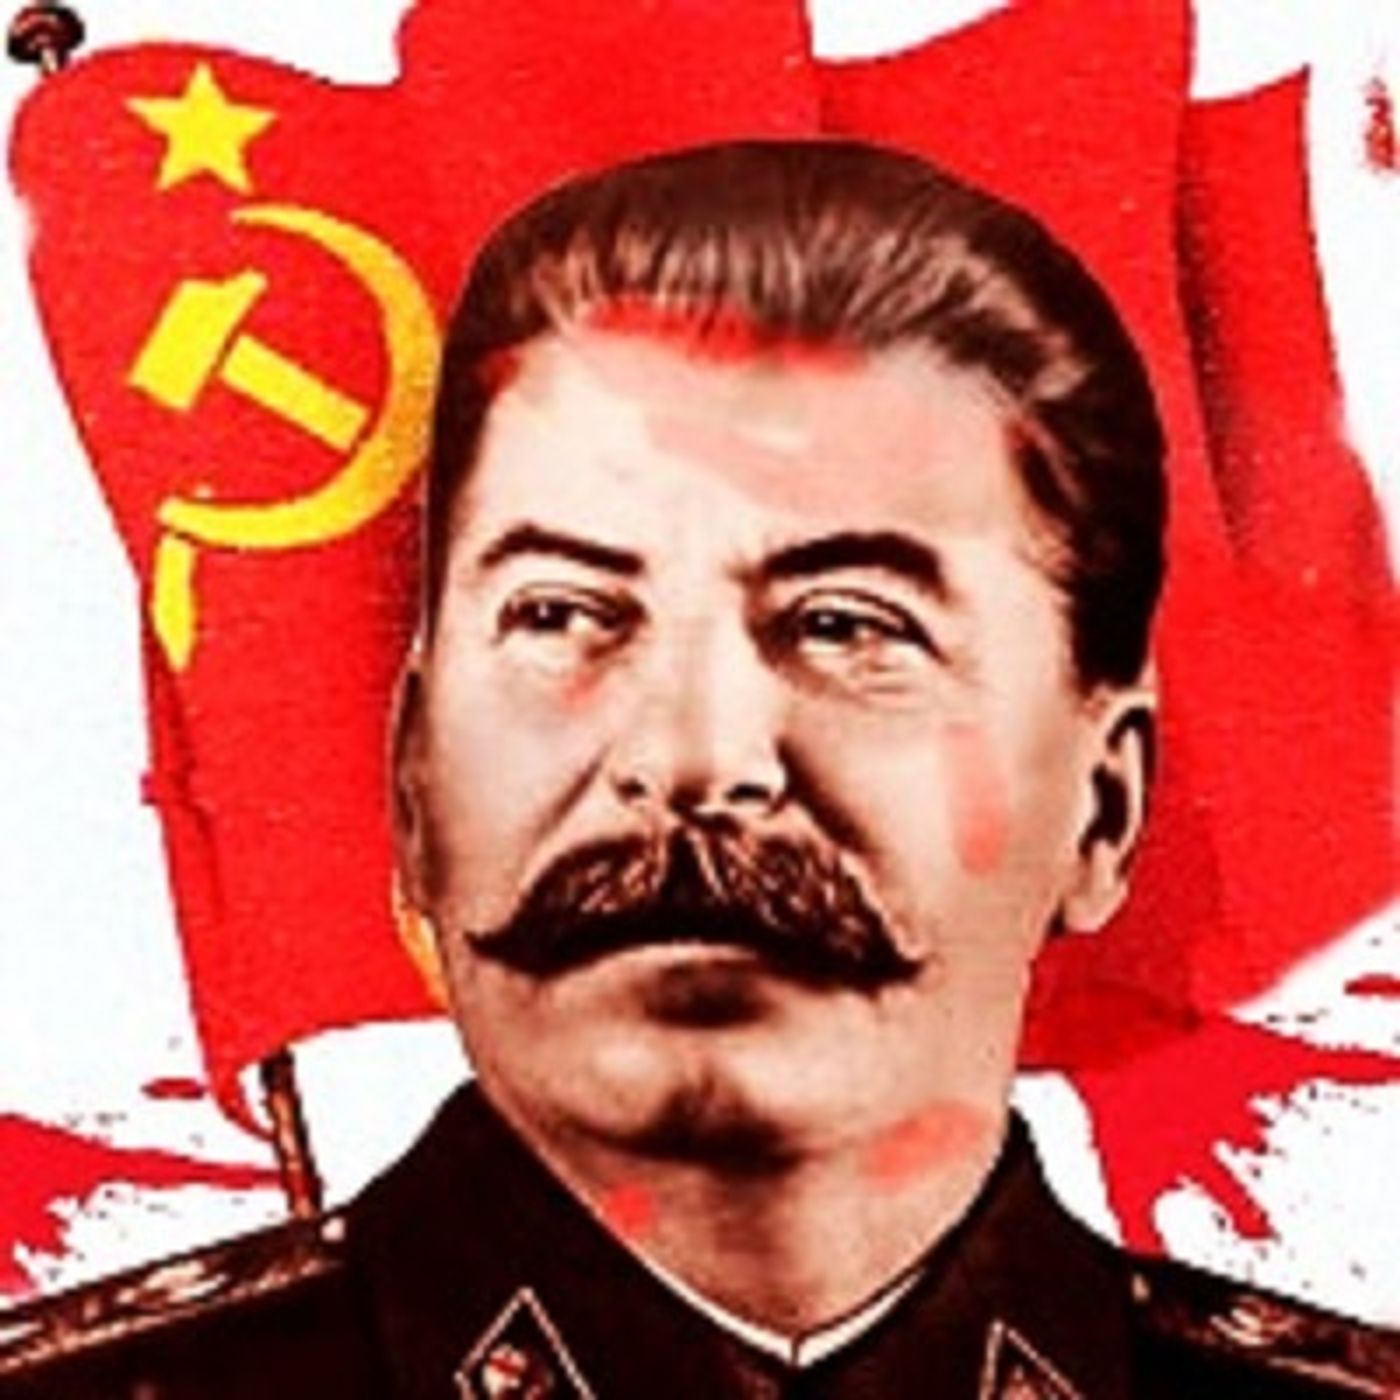 Stalin, la tentazione di estirpare il male con la violenza